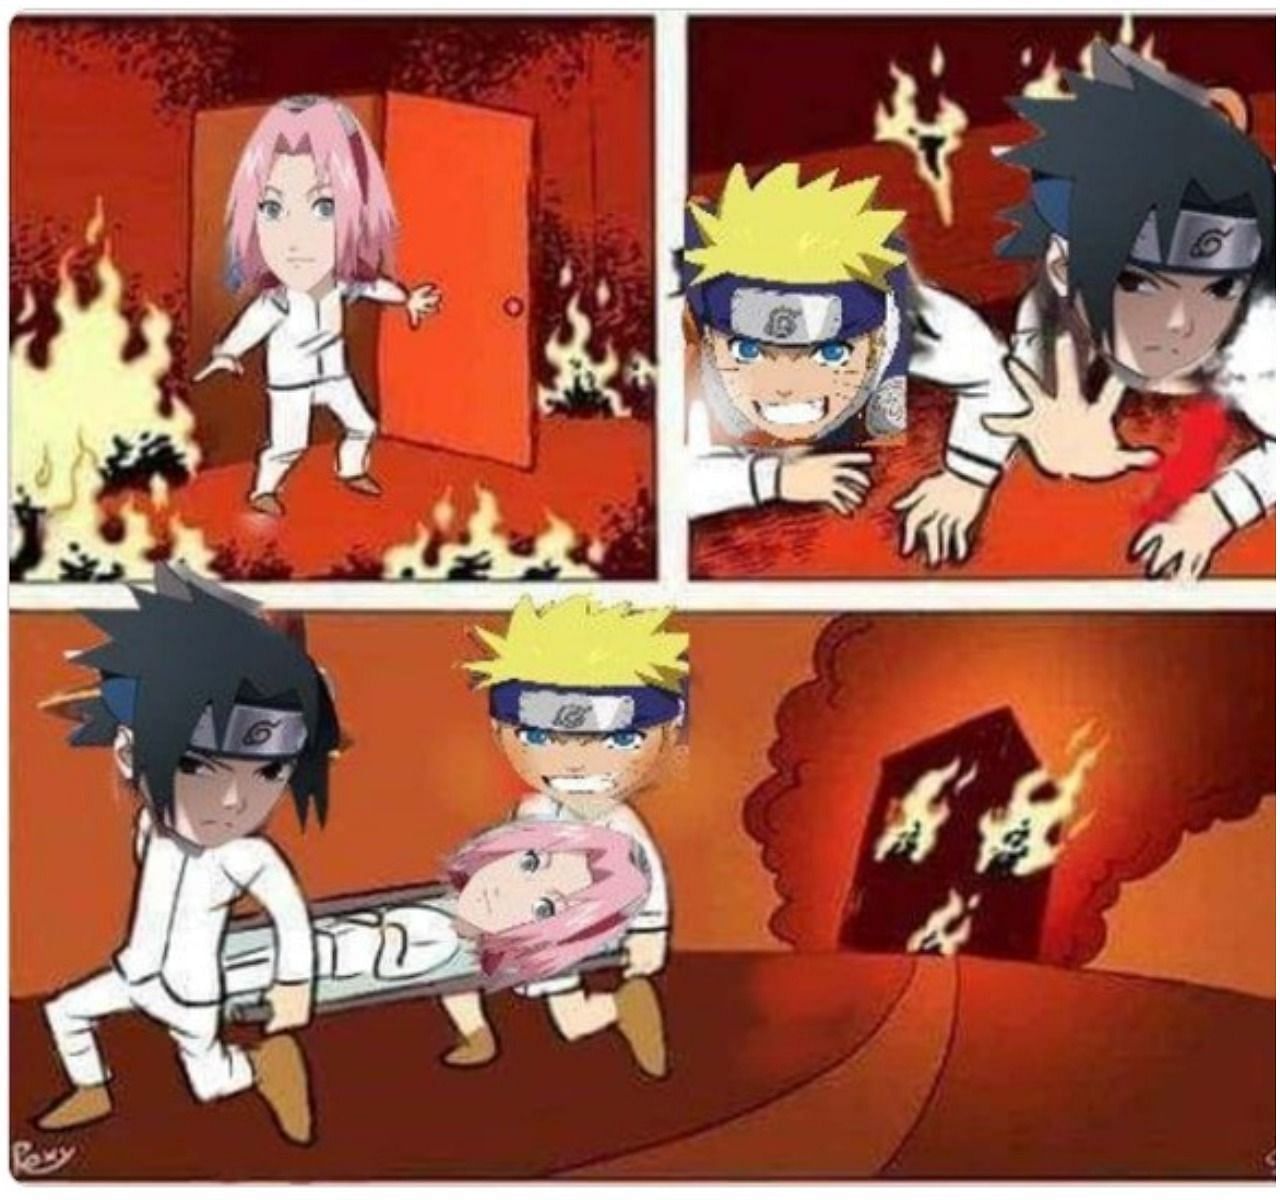 Sakura always being helped (Image via Reddit)